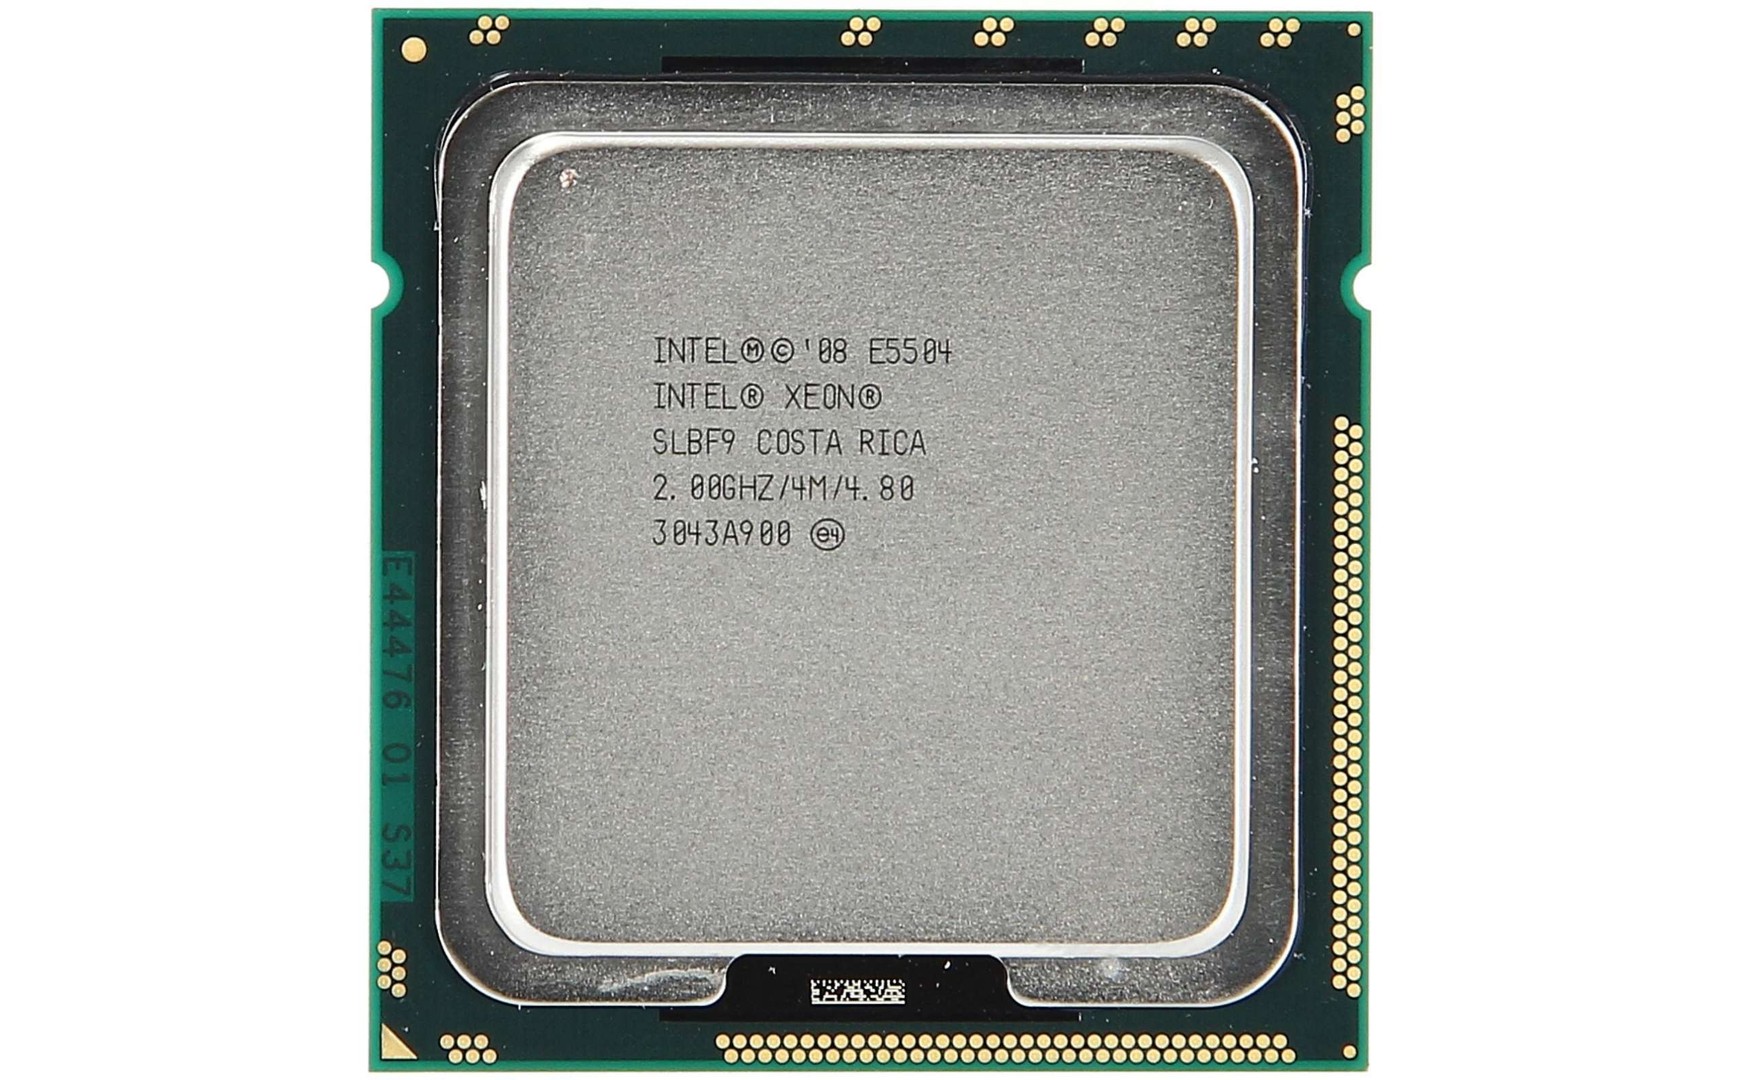 computadoras y laptops - Intel Procesador Xeon E5504 SLBF9 CPU de servidor LGA 1366 2.0GHZ 4MB 2